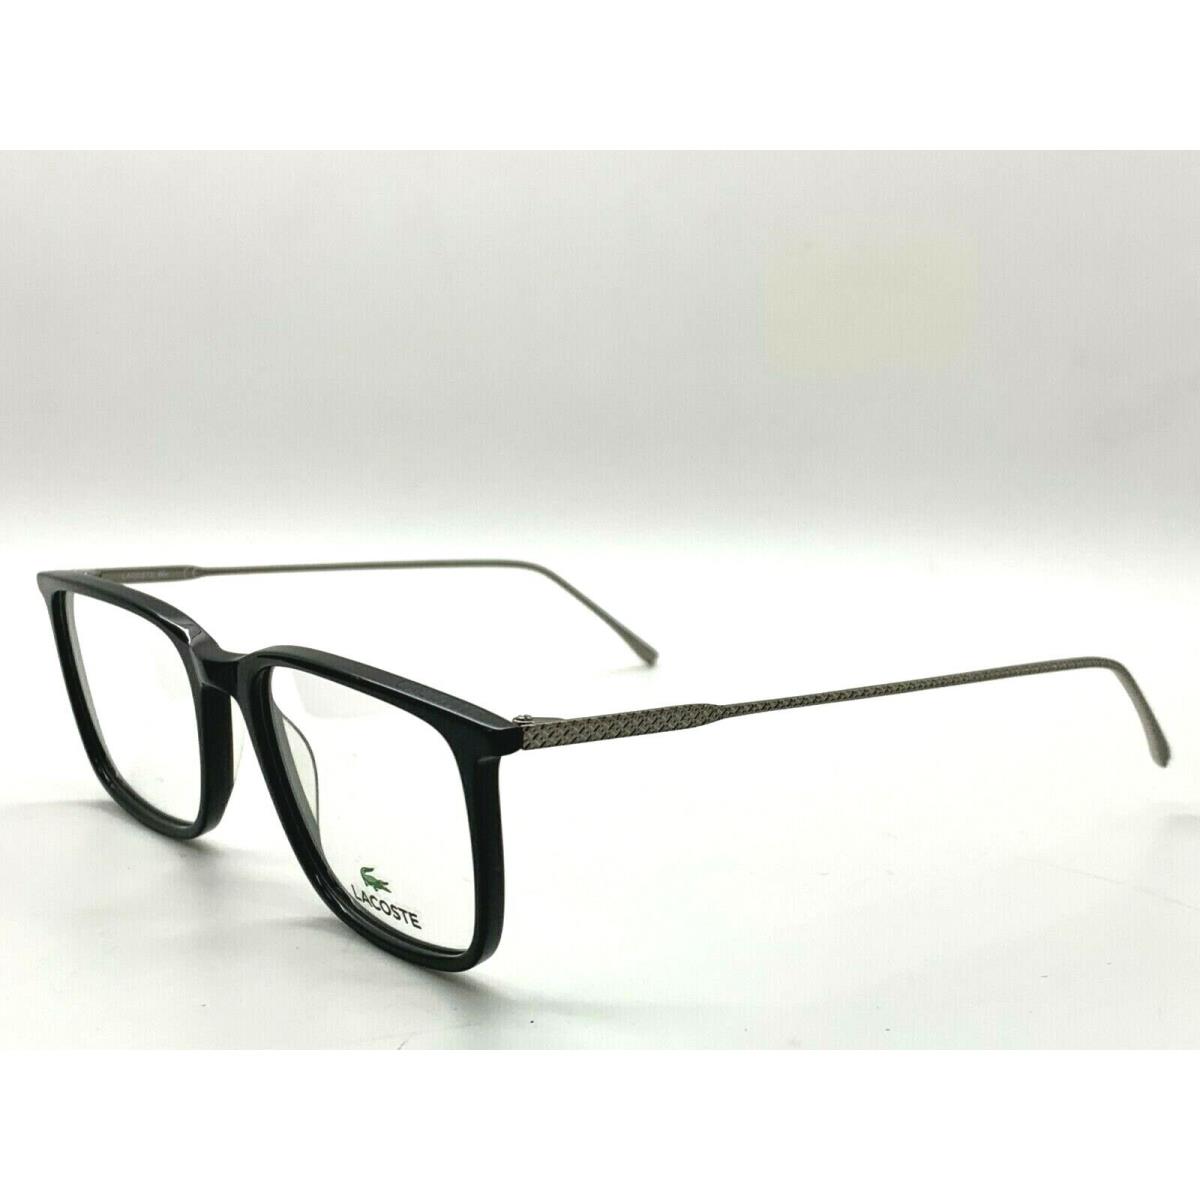 Lacoste eyeglasses  - BLACK /GUNMETAL Frame